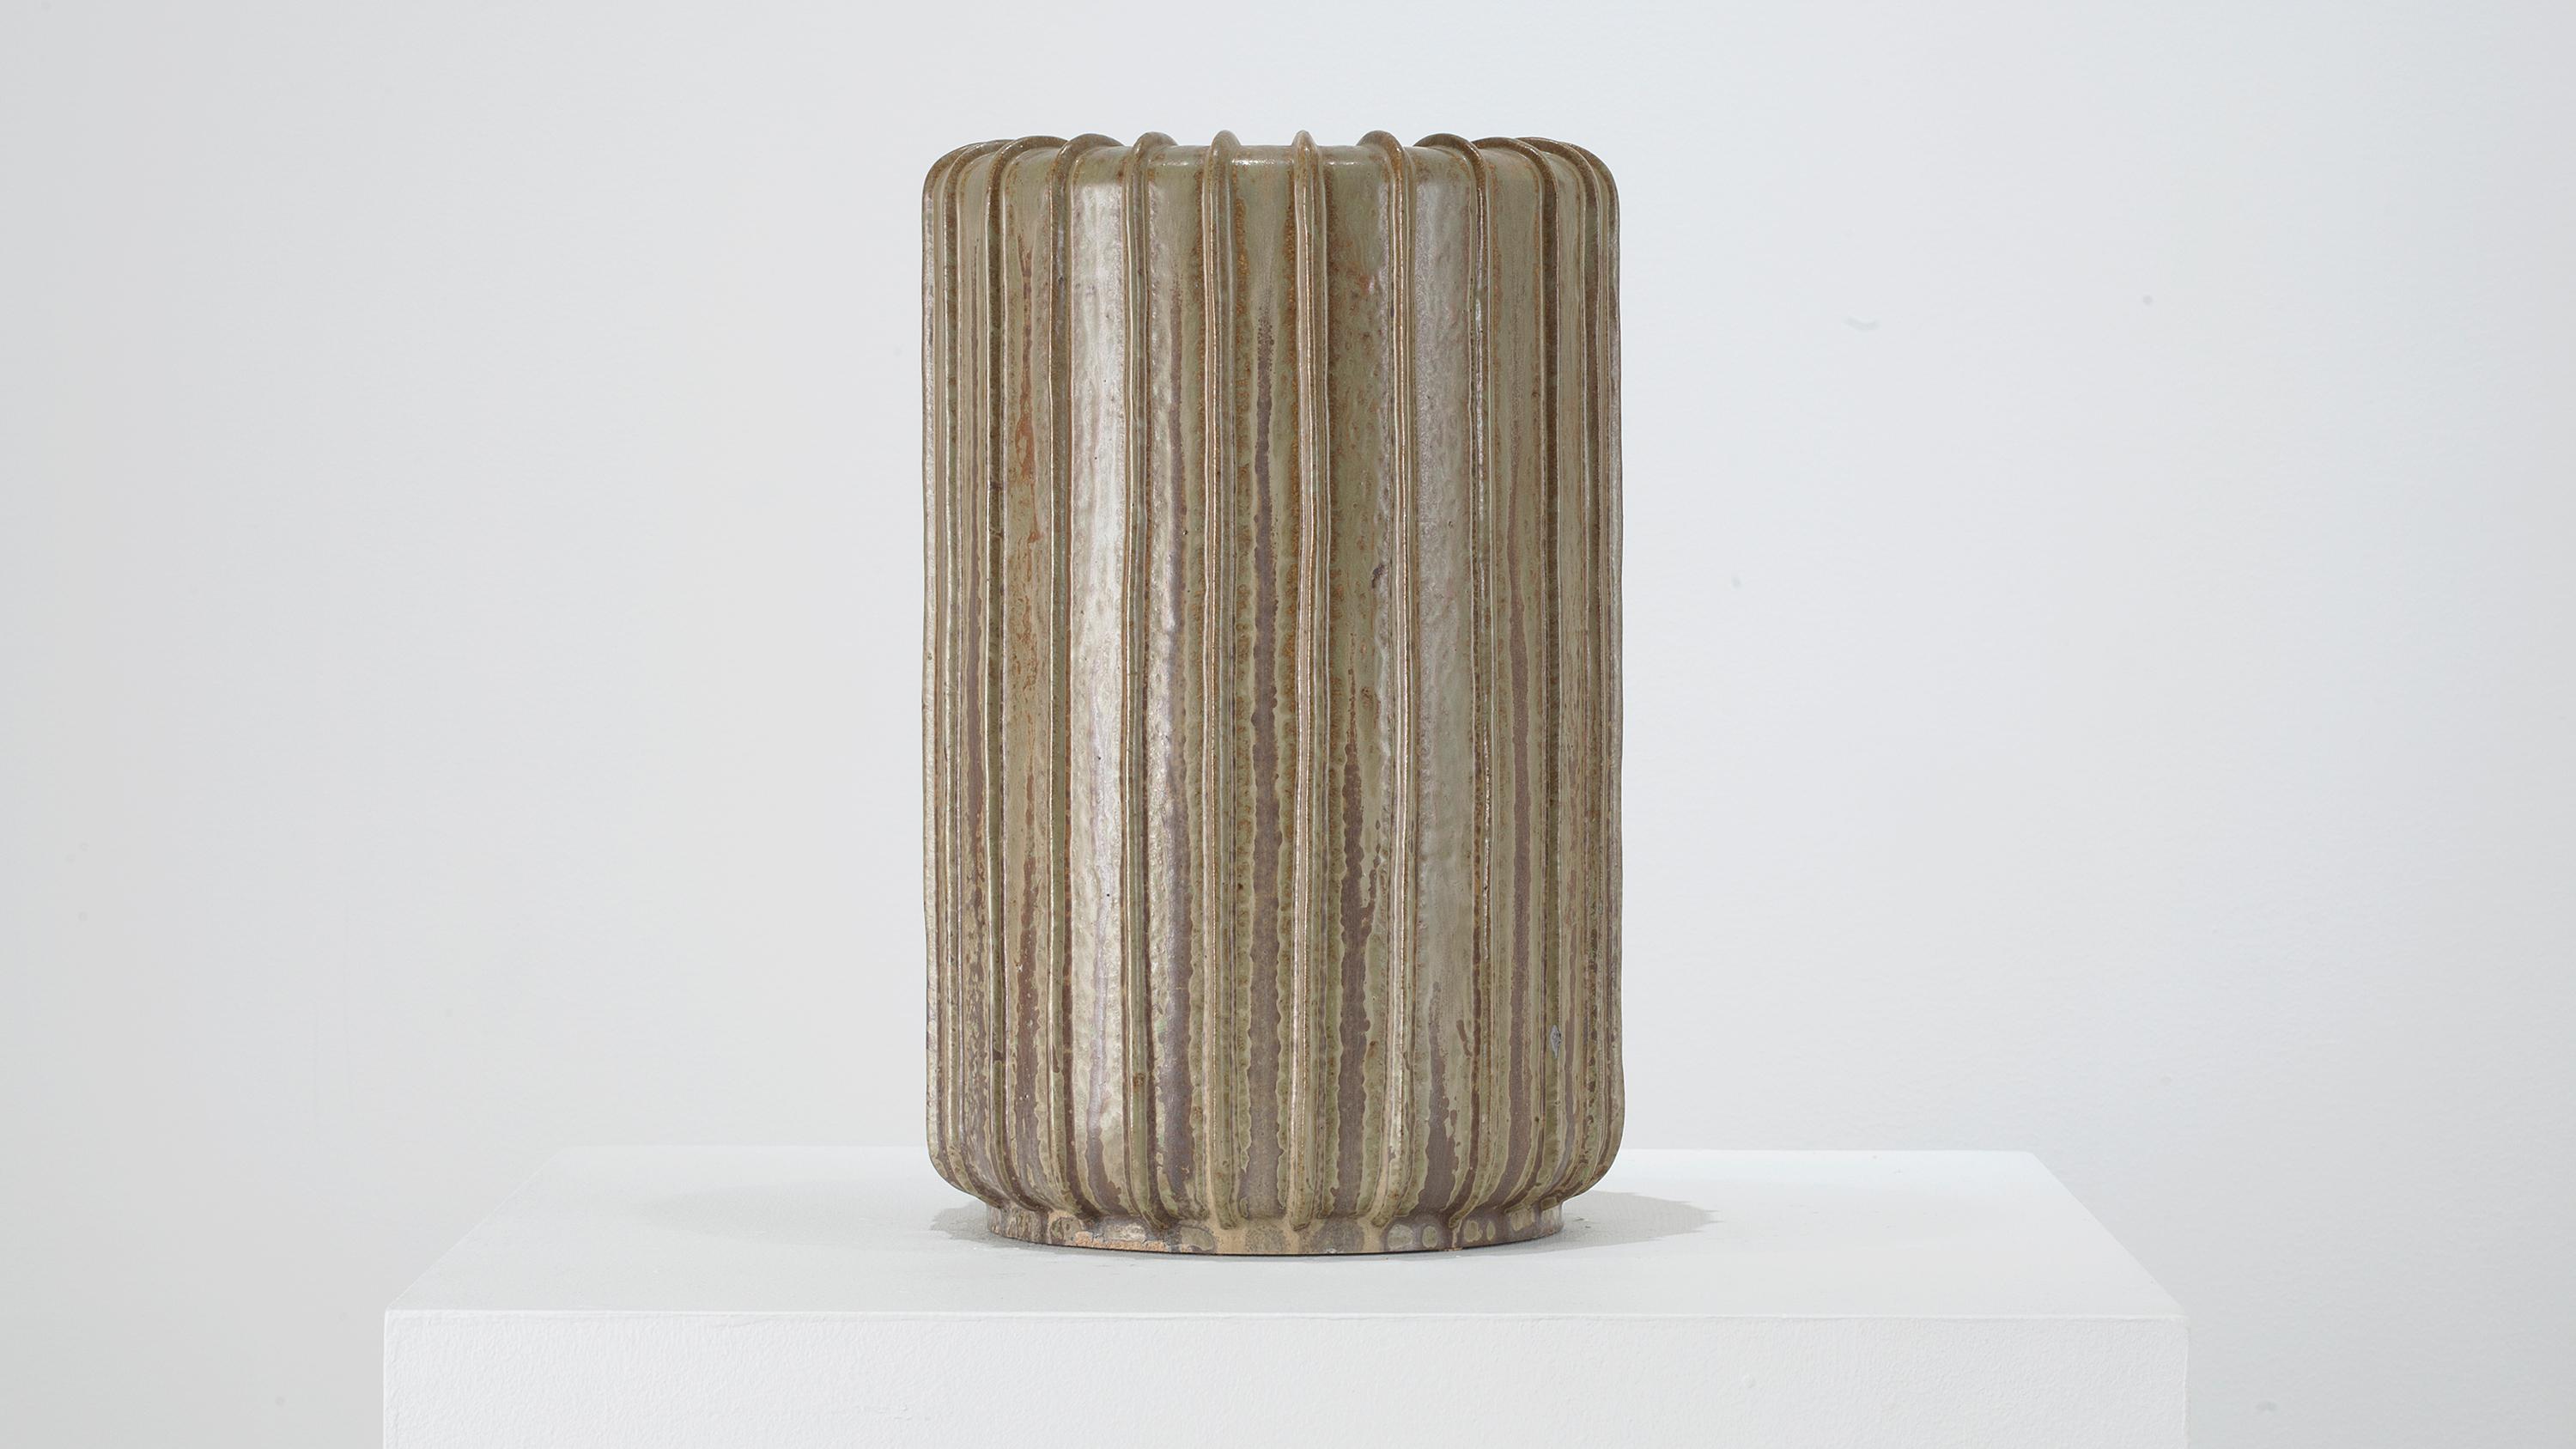 Schöne hohe gerippte Vase von Arne Bang, Dänemark, um 1950. In ausgezeichnetem Vintage-Zustand. 

Arne Bang (Dänisch, 1901-1983)
Hohe gerippte Vase aus Steinzeug, Dänemark, um 1950
Steingut
Maße: 15.5